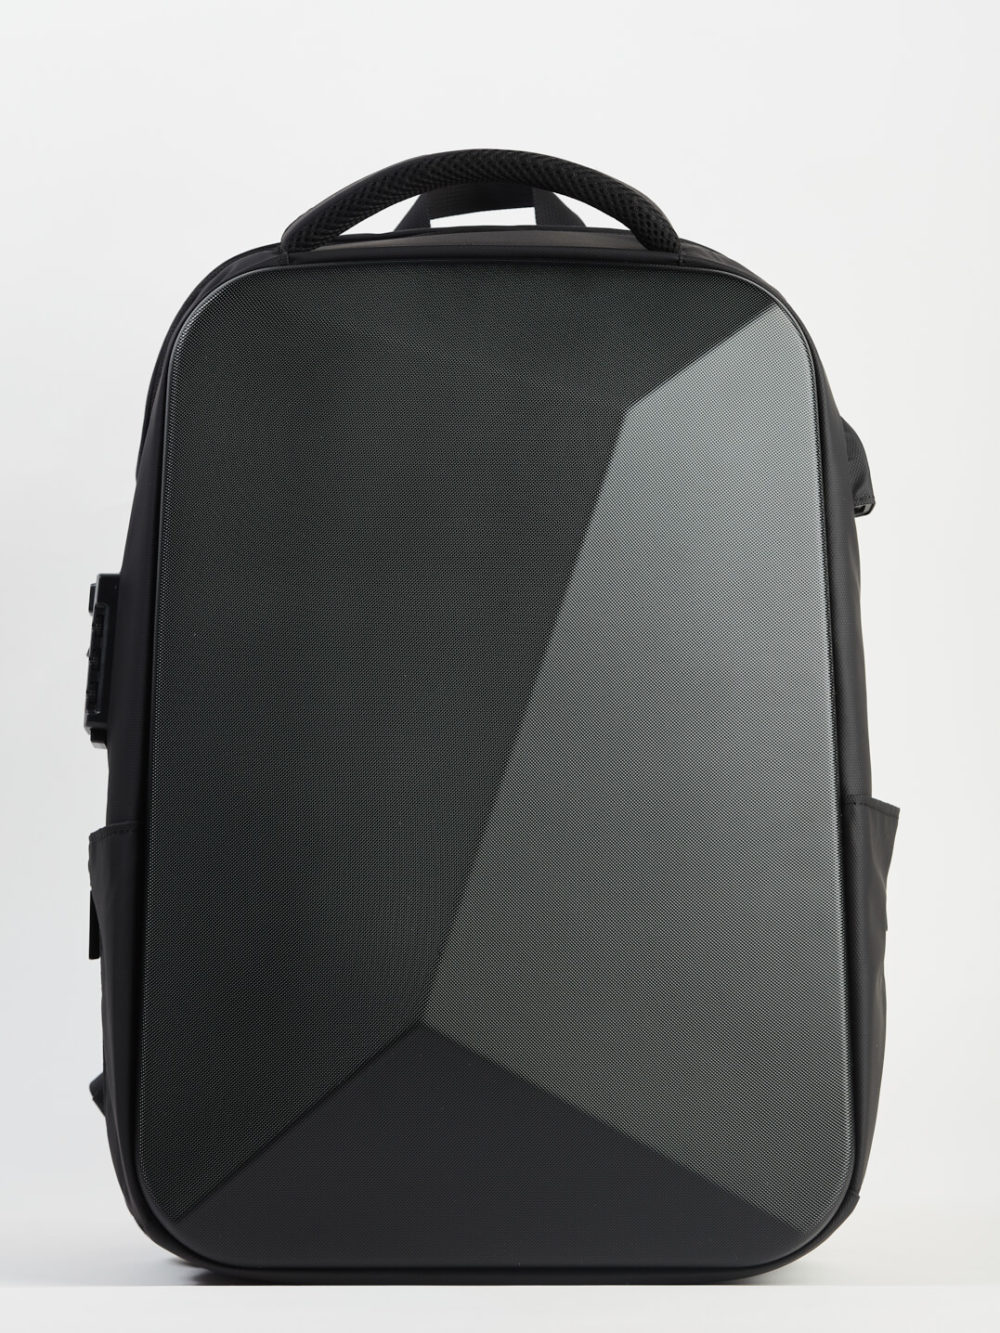 Il s'agit d'un sac à dos moderne de couleur noire et à coque rigide. Il présente une surface texturée et un design élégant. Il comporte également une poignée sur le dessus et des poches latérales, disposées sur un fond blanc.